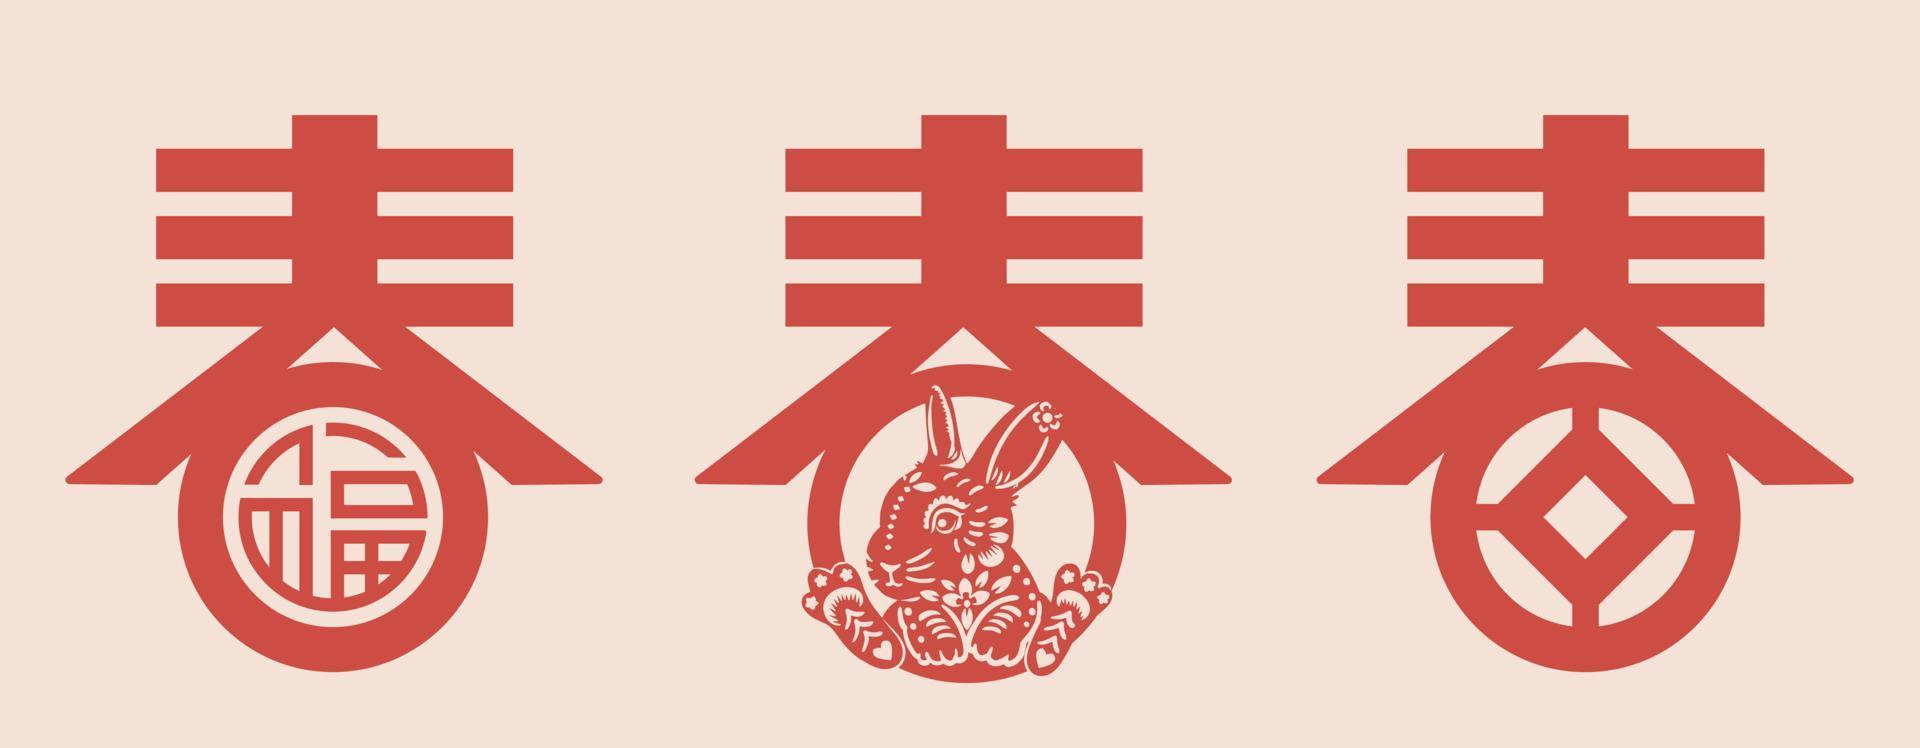 Chinese karakter voorjaar typografie met konijn illustratie Chinese vertaling voorjaar vector